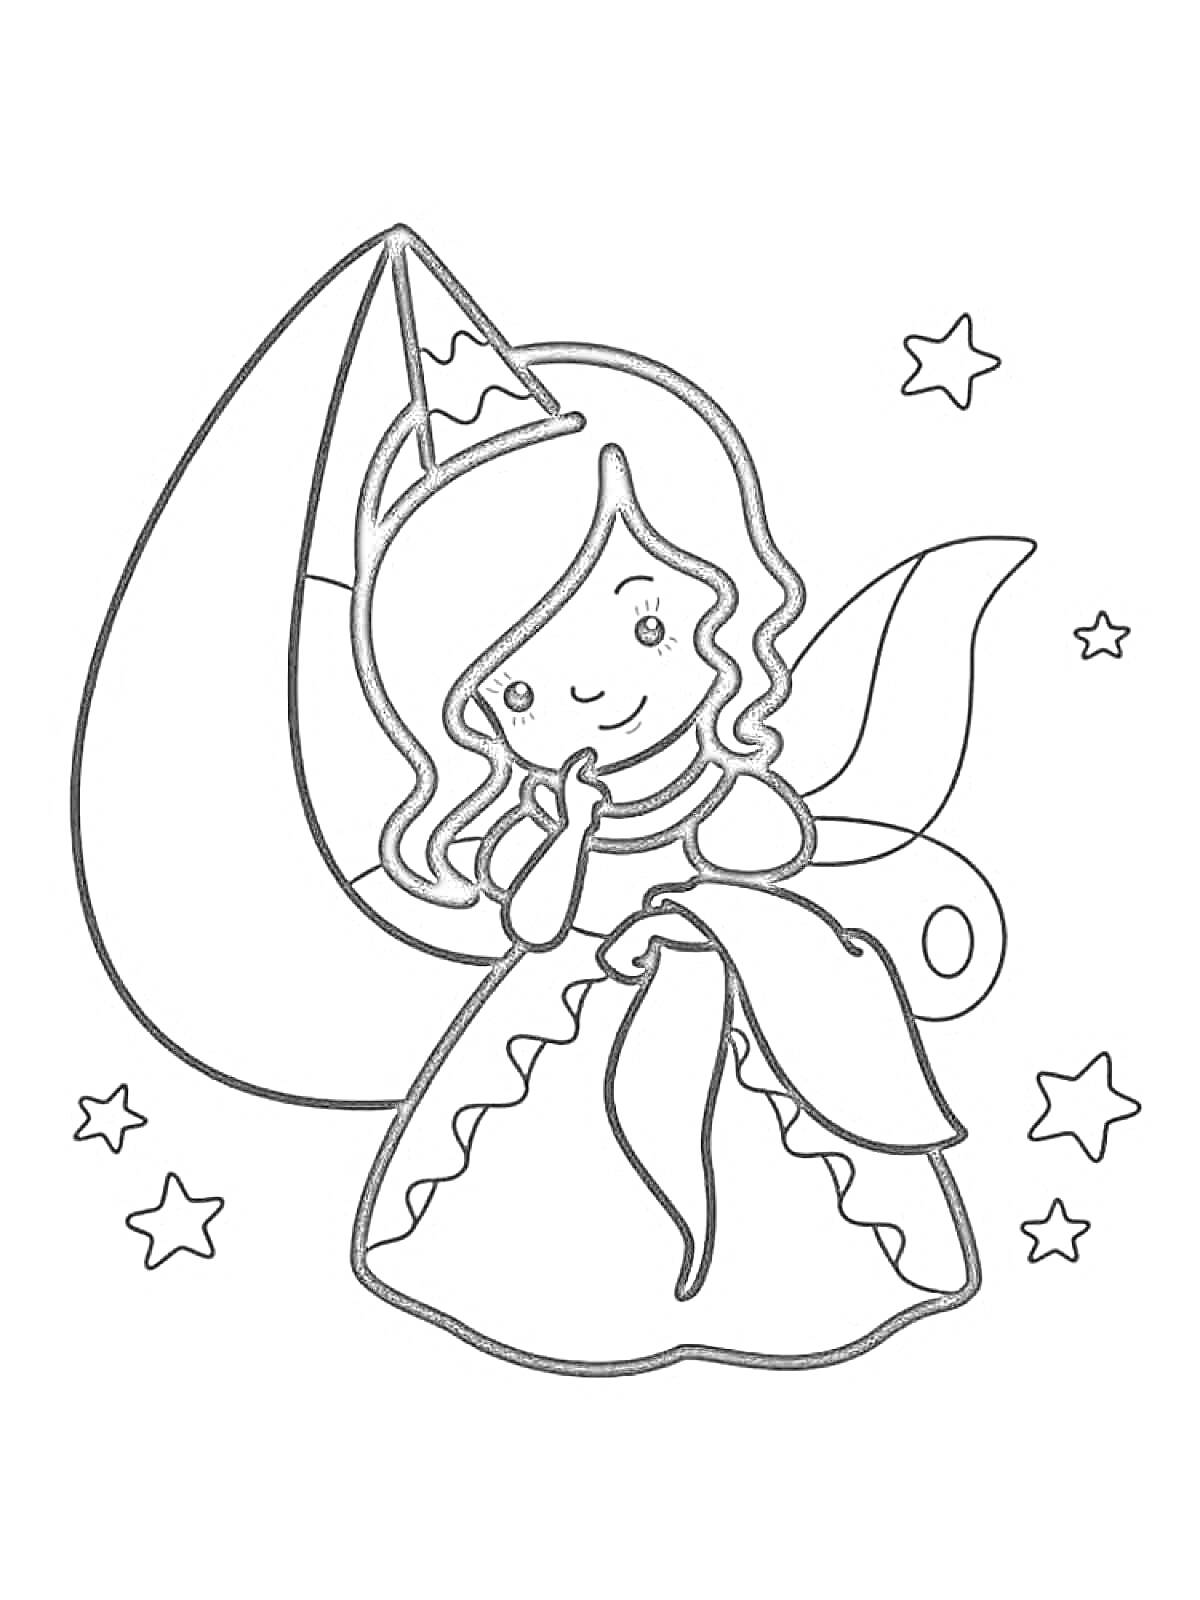 Раскраска Фея в праздничном колпаке с бантом на платье, звезды на фоне